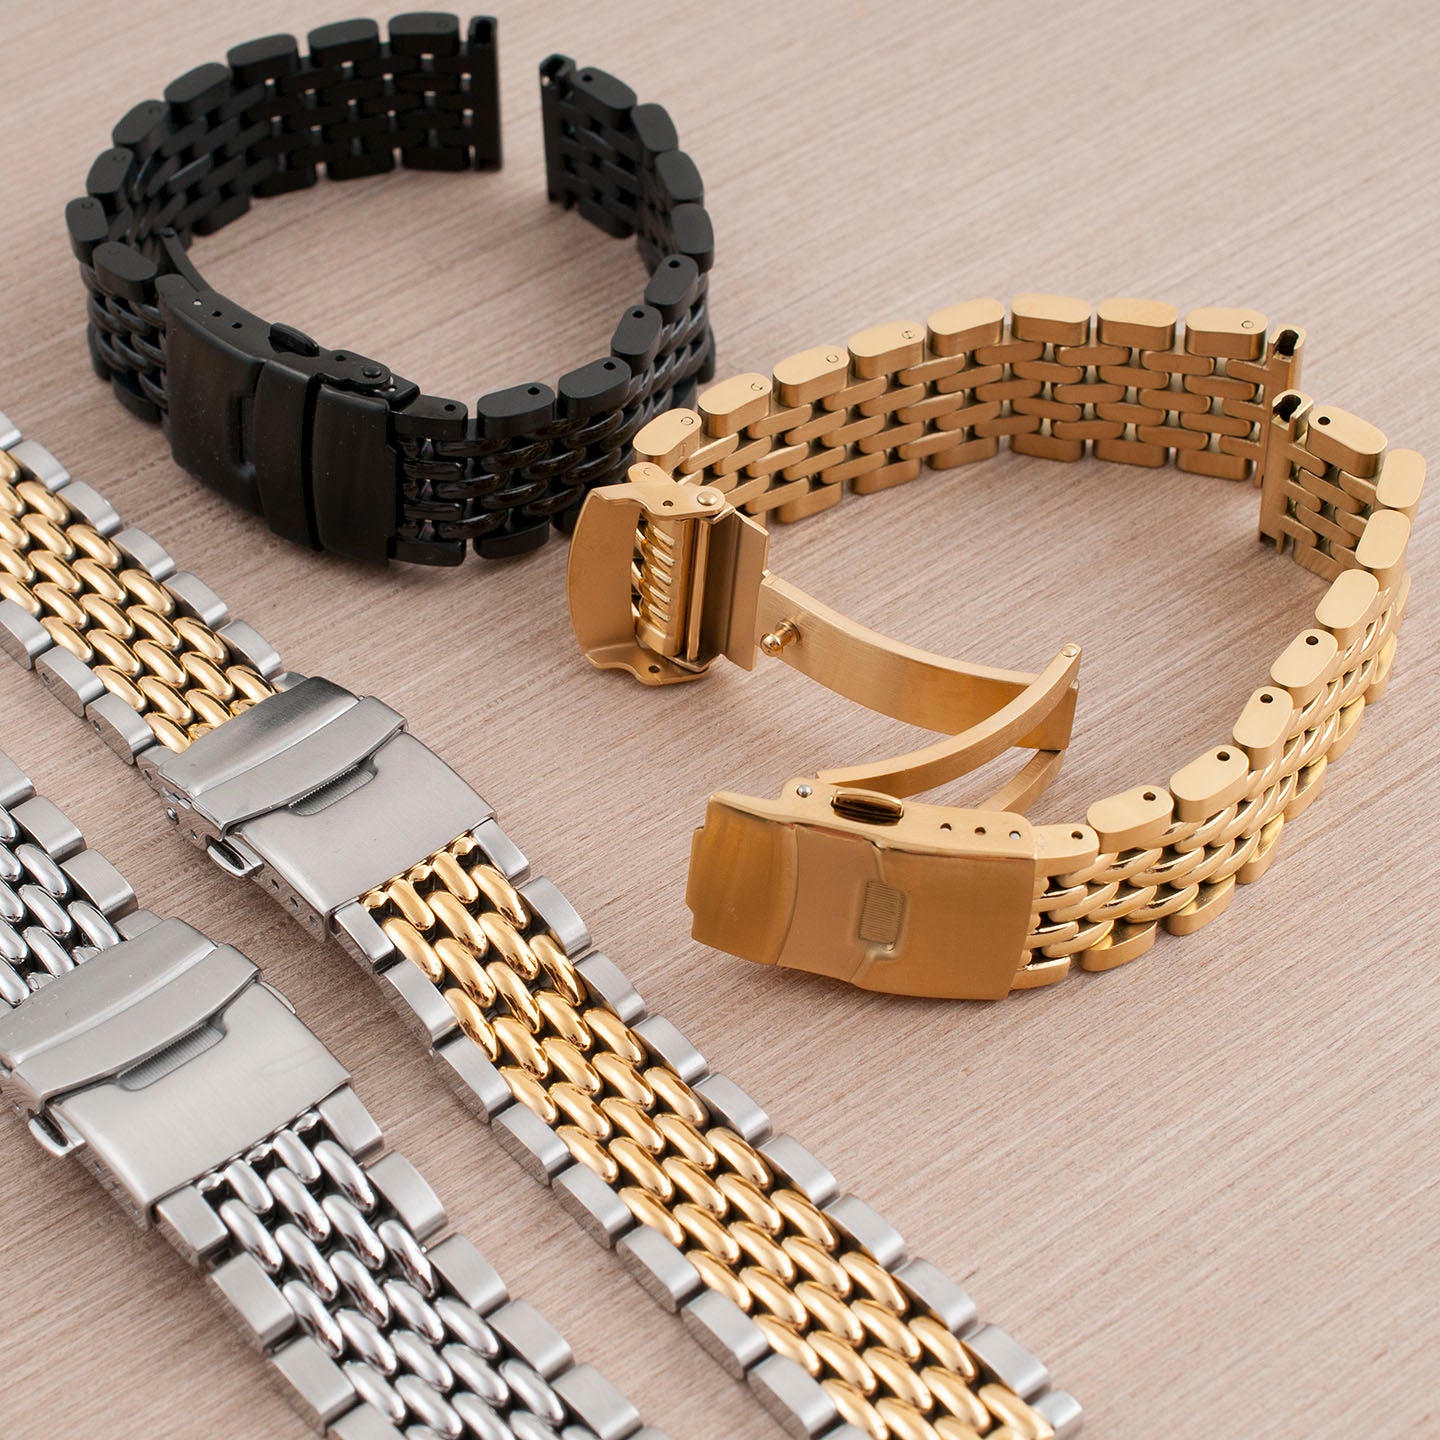 Q Timex 36mm Stainless Steel Bracelet Watch - TW2U95800 | Timex US